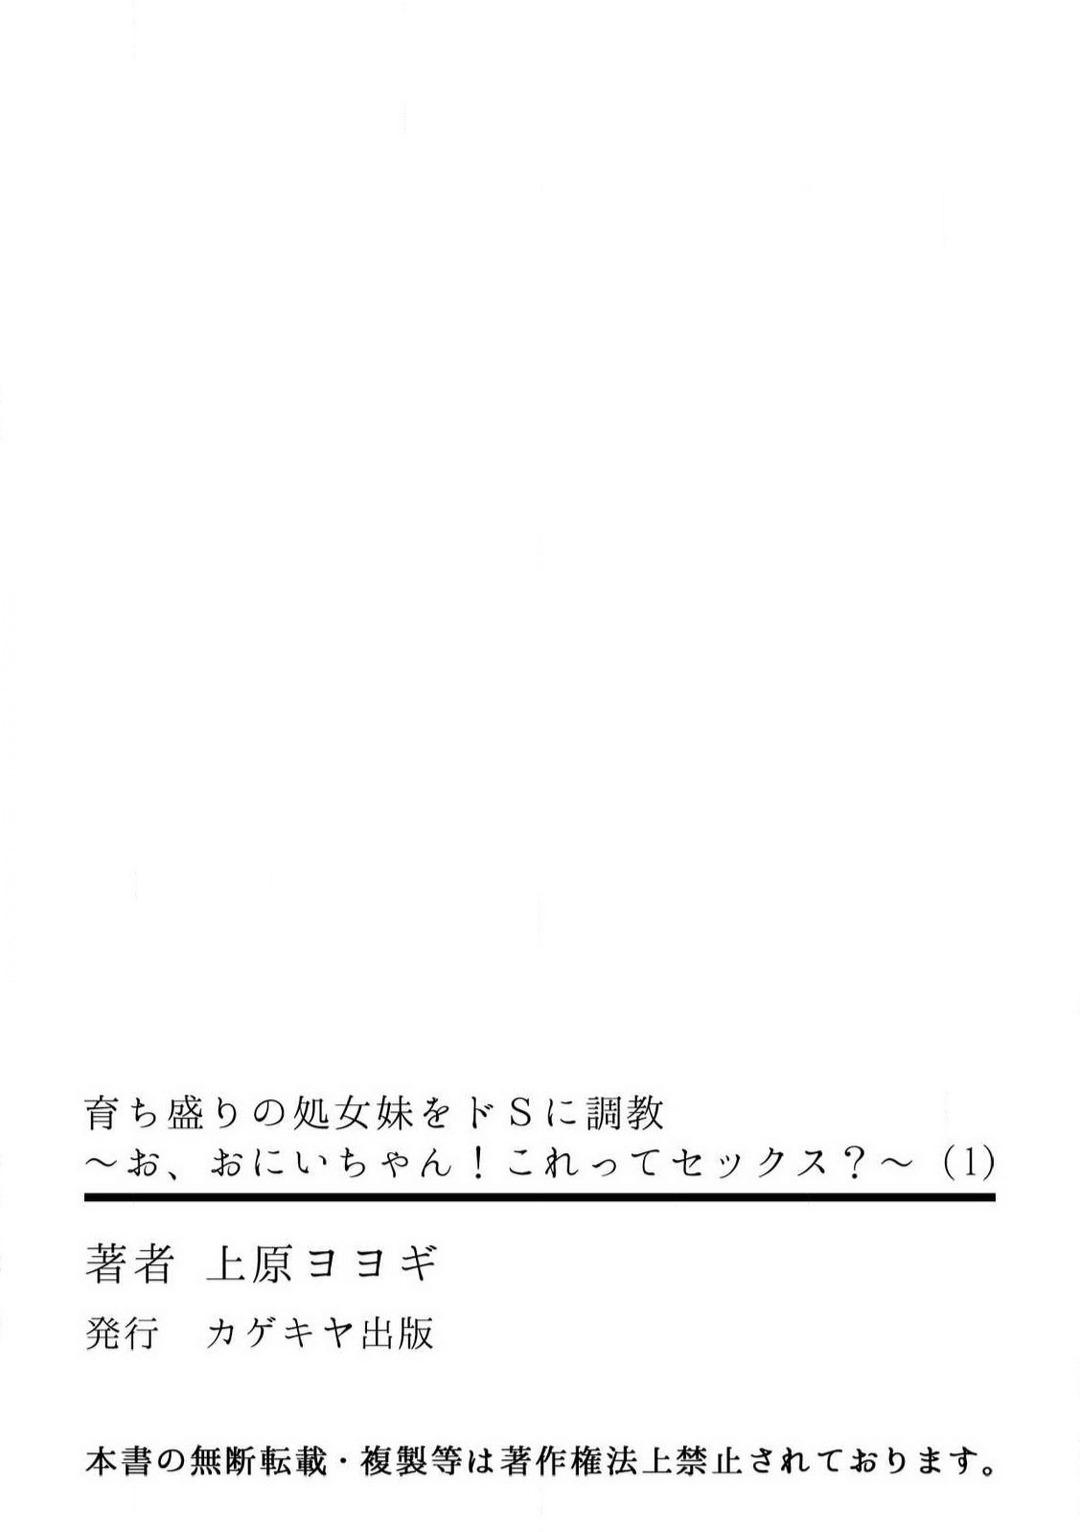 [Uehara Yoyogi] Sodachi-Mori no Shojo Imōto o Doesu ni Chōkyō 〜 O, O Niichan! Korette Sekkusu?〜Chp.1-2 31